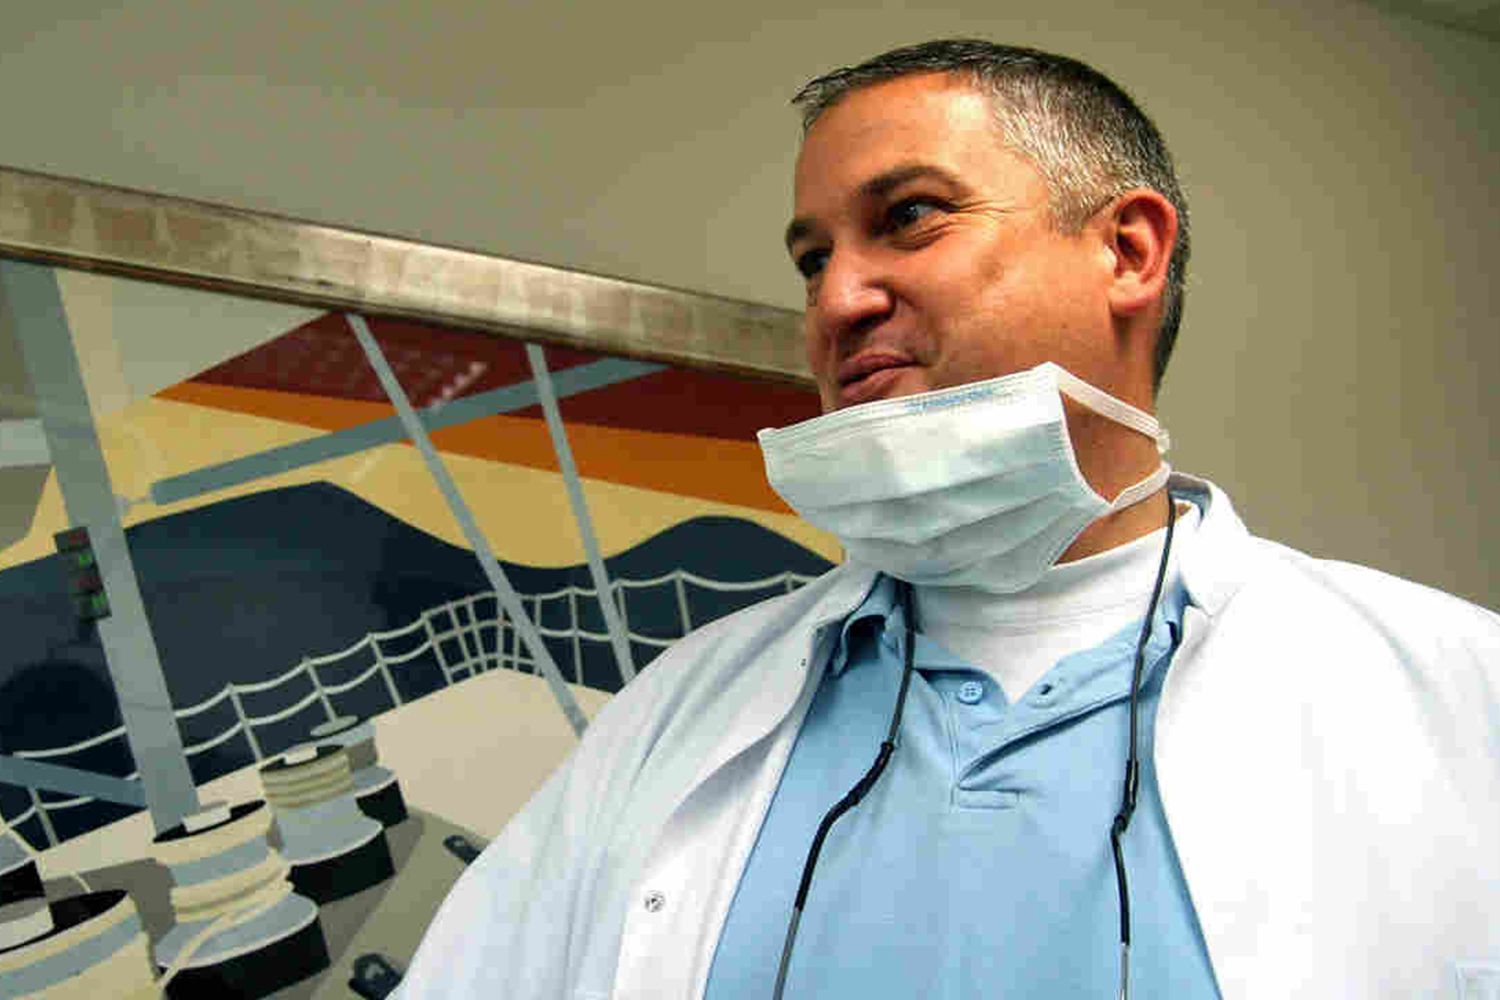 El ‘dentista del terror’ acusado de mutilar más de 100 bocas en Francia